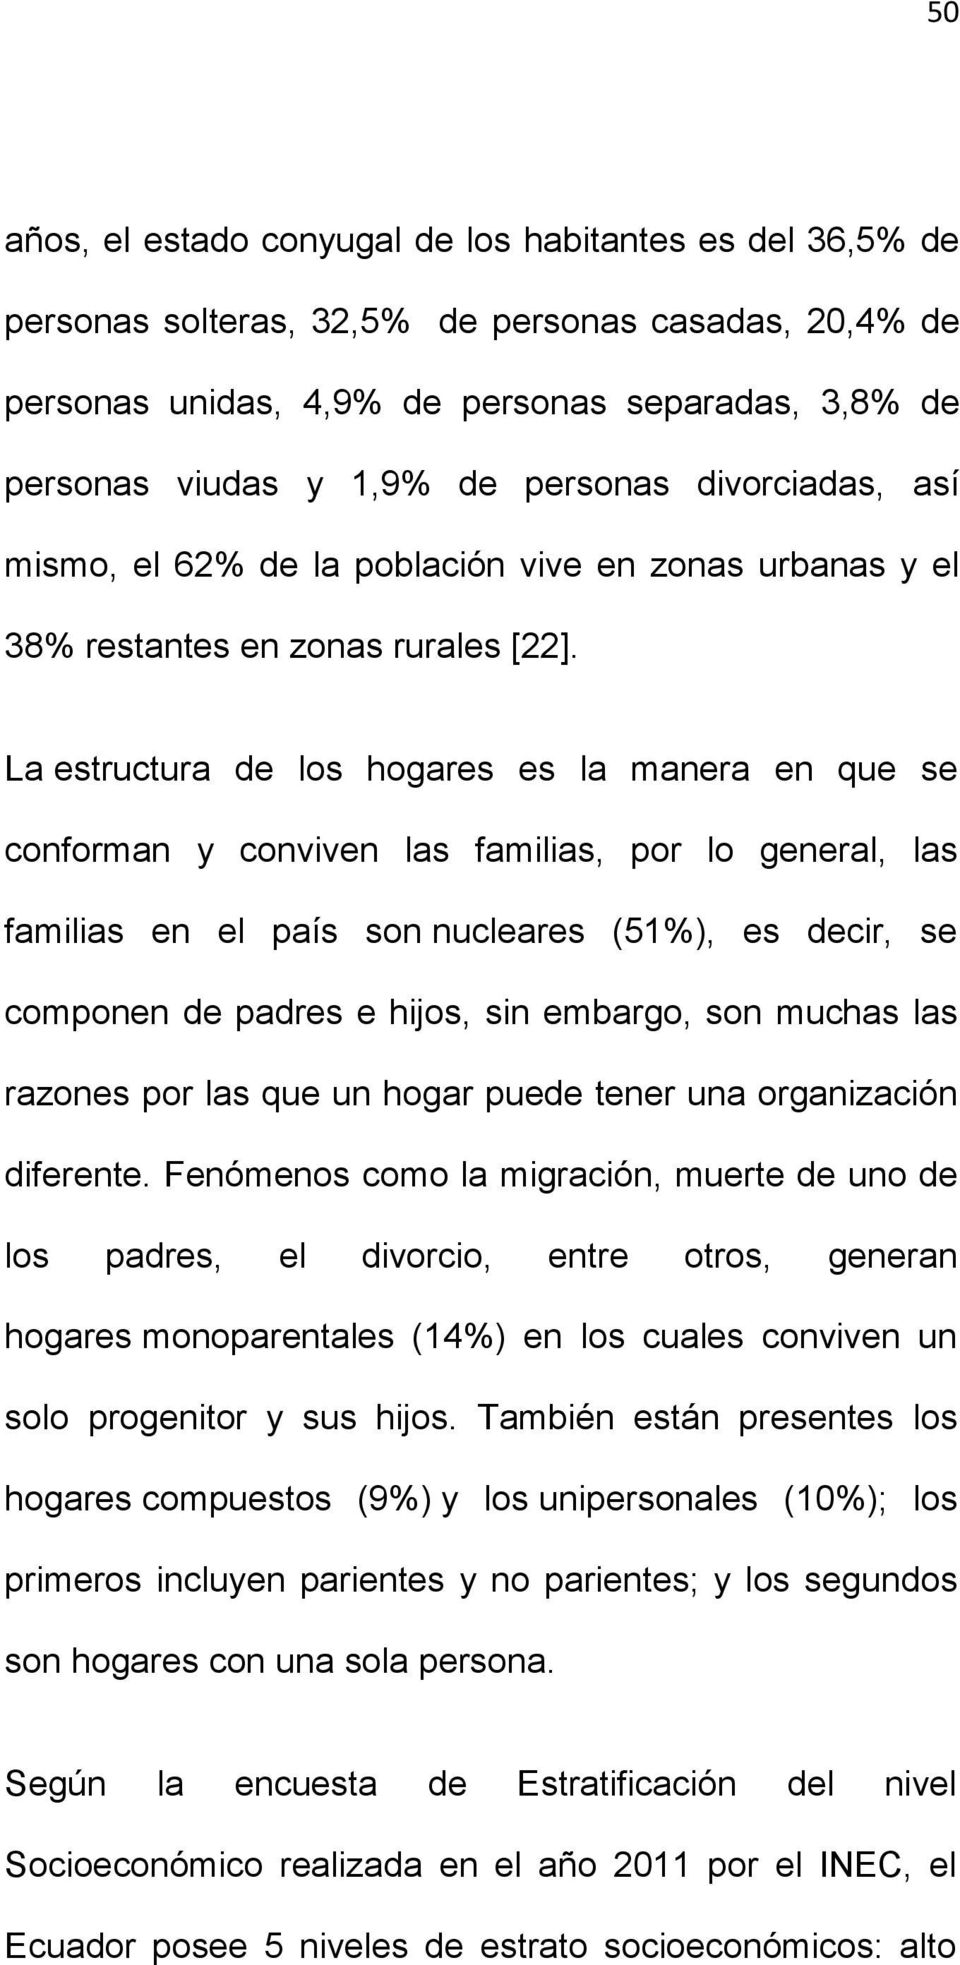 La estructura de los hogares es la manera en que se conforman y conviven las familias, por lo general, las familias en el país son nucleares (51%), es decir, se componen de padres e hijos, sin